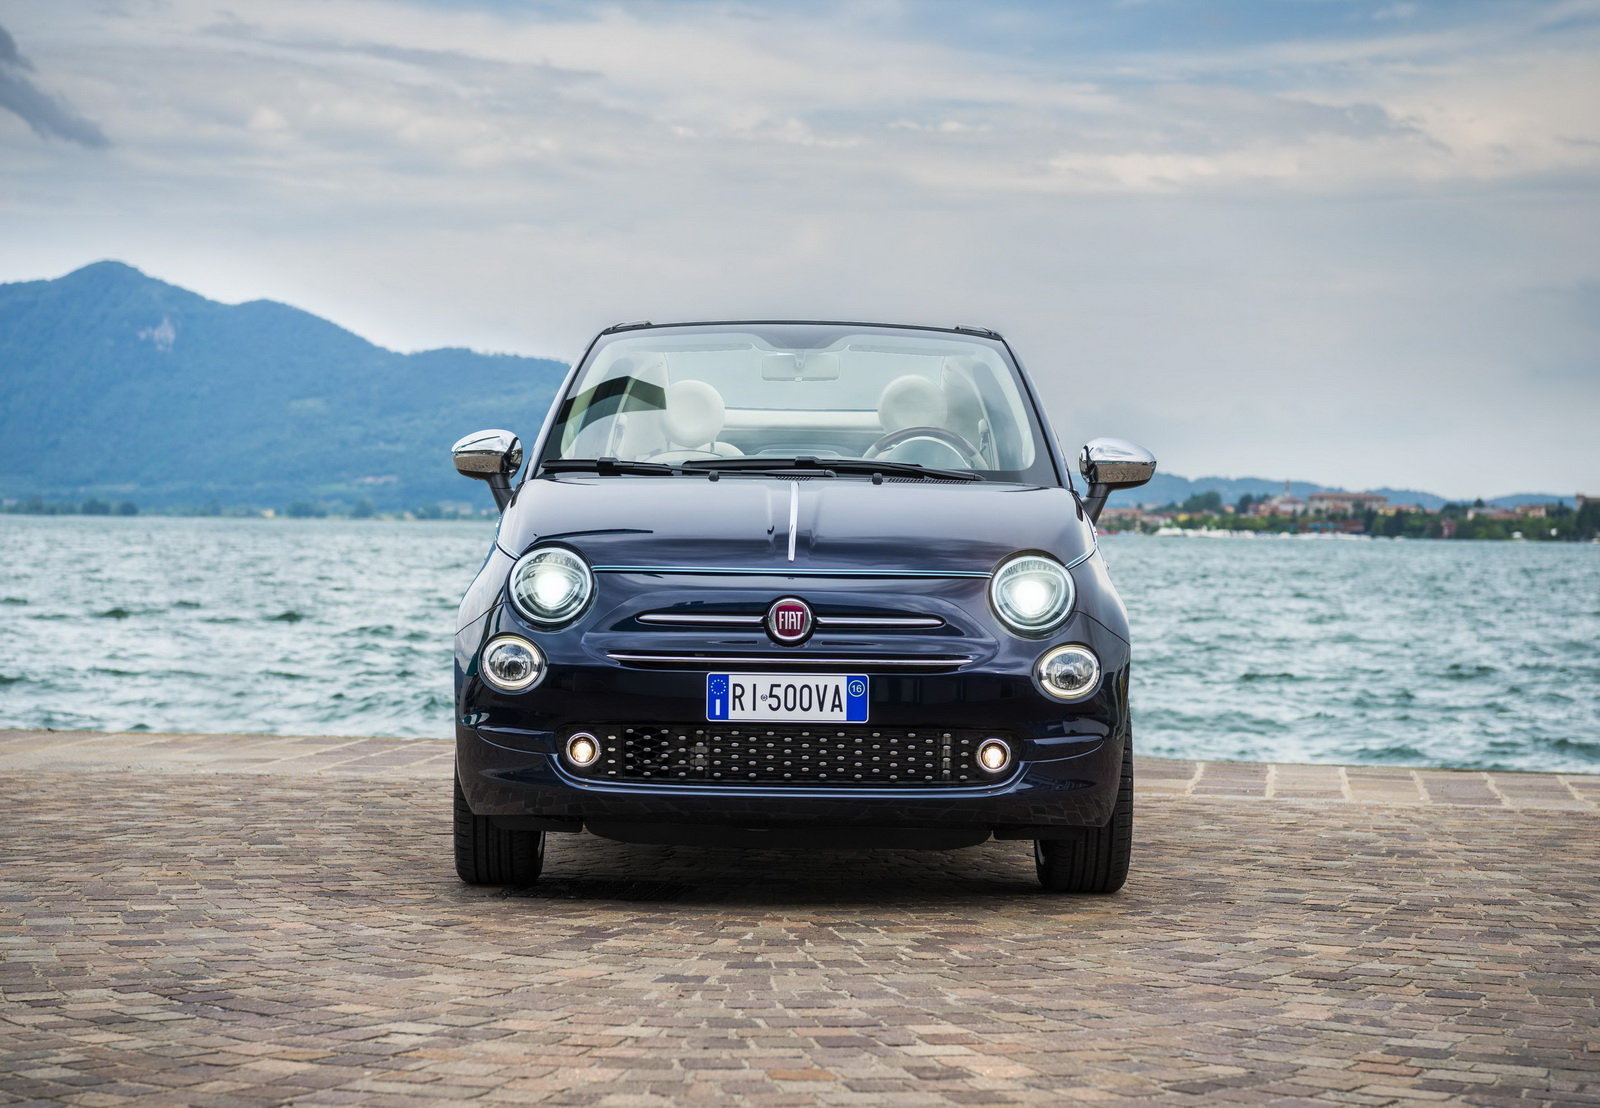 Fiat 500 slaví už 60 let, za tu dobu pěkně vyrostl